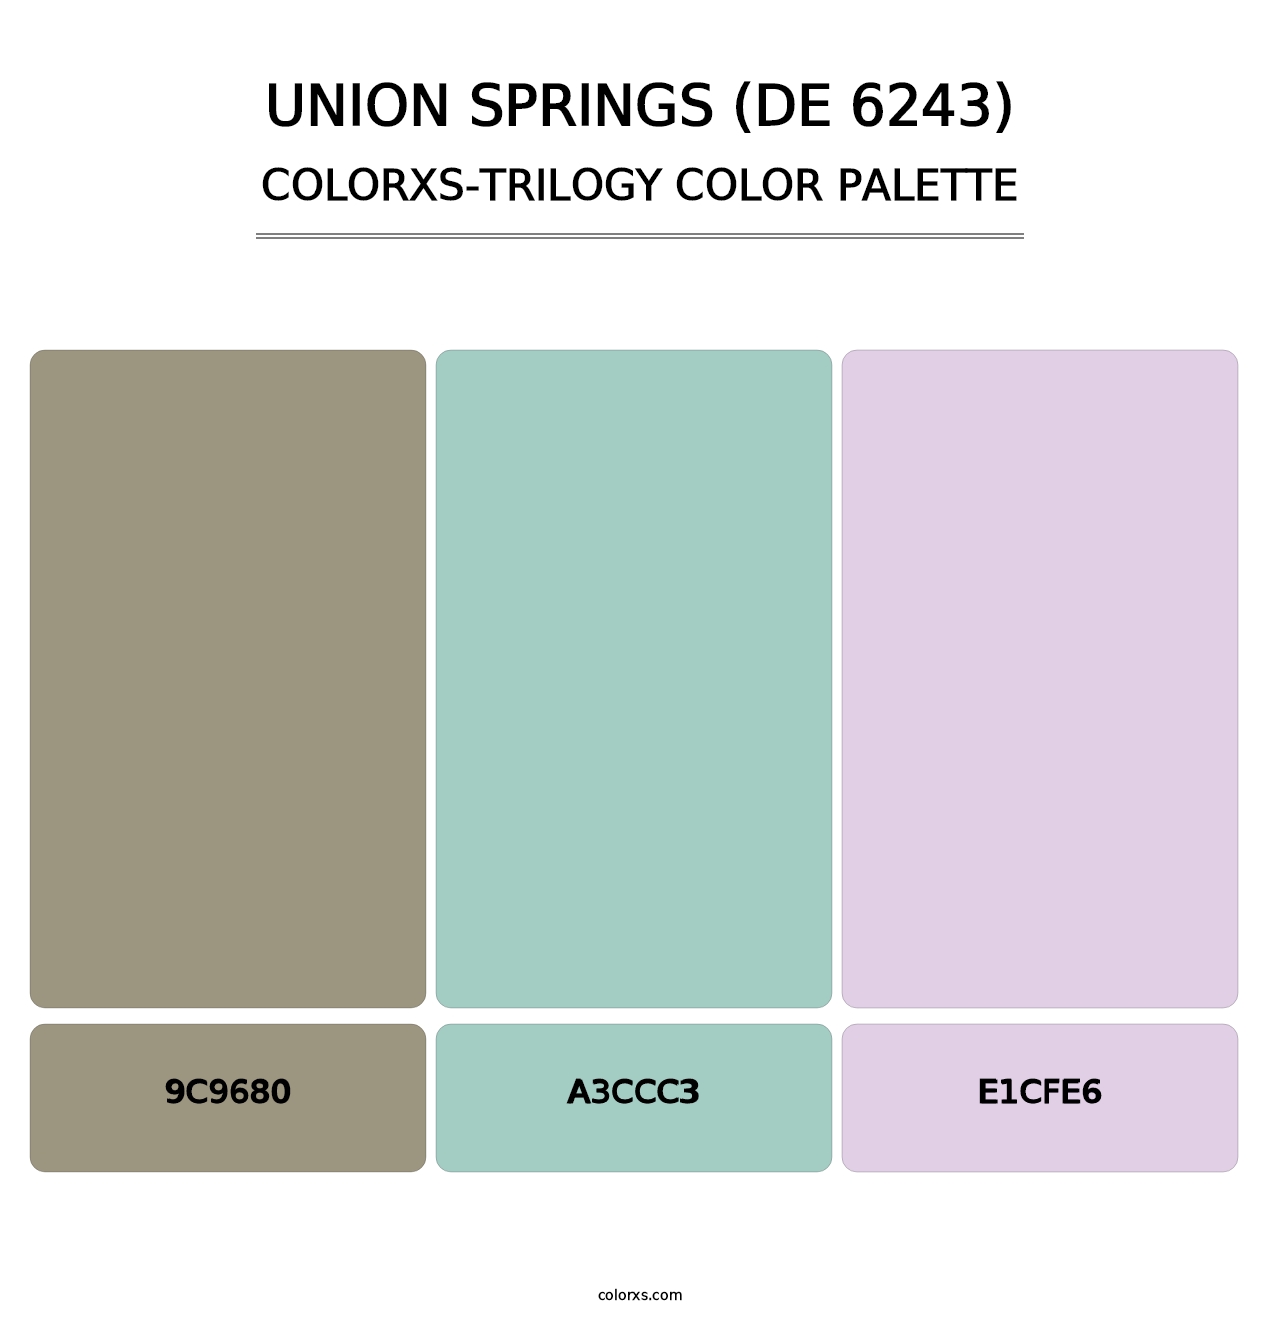 Union Springs (DE 6243) - Colorxs Trilogy Palette